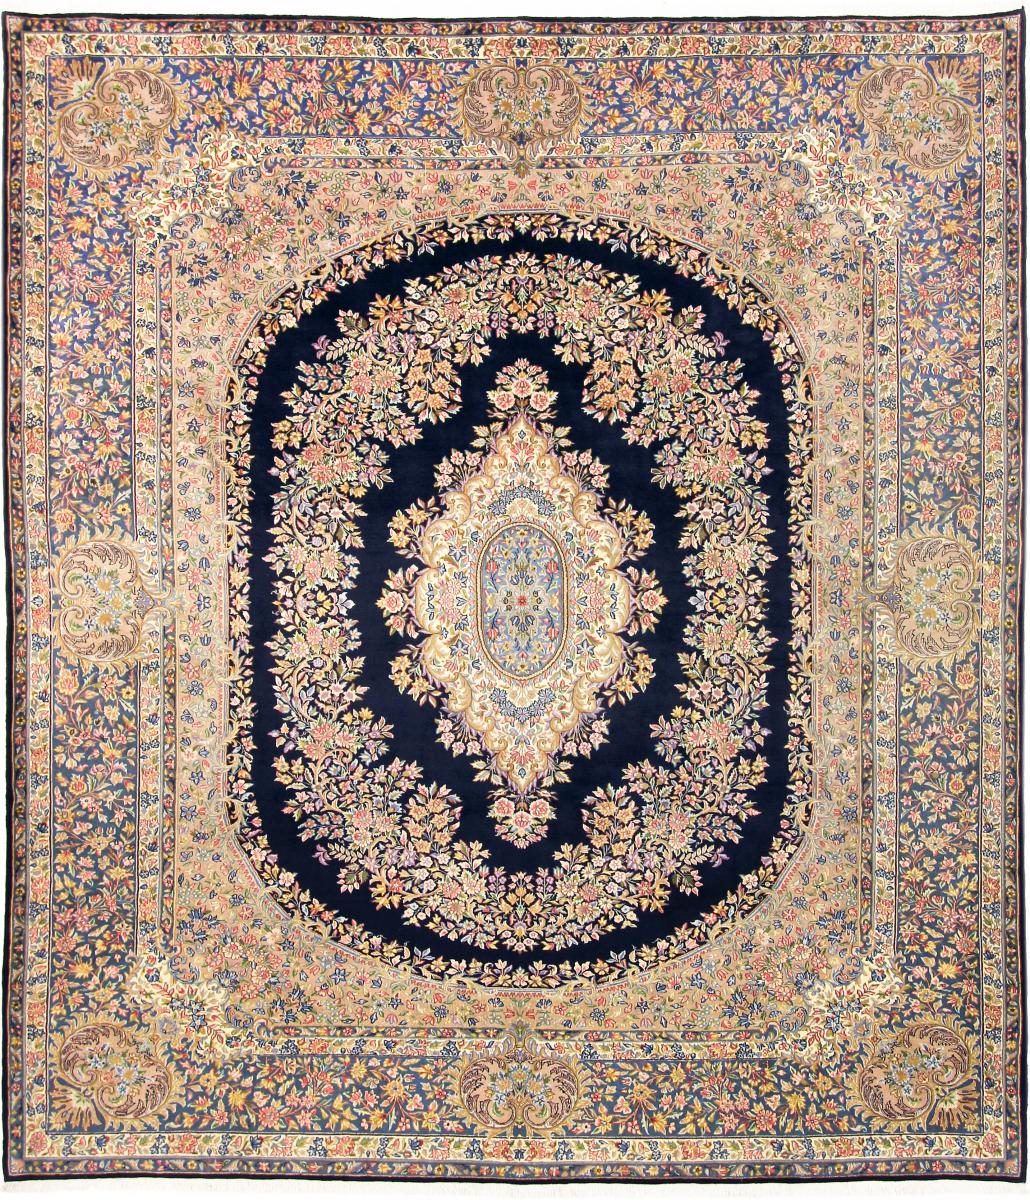  ペルシャ絨毯 ケルマン Rawar 349x305 349x305,  ペルシャ絨毯 手織り